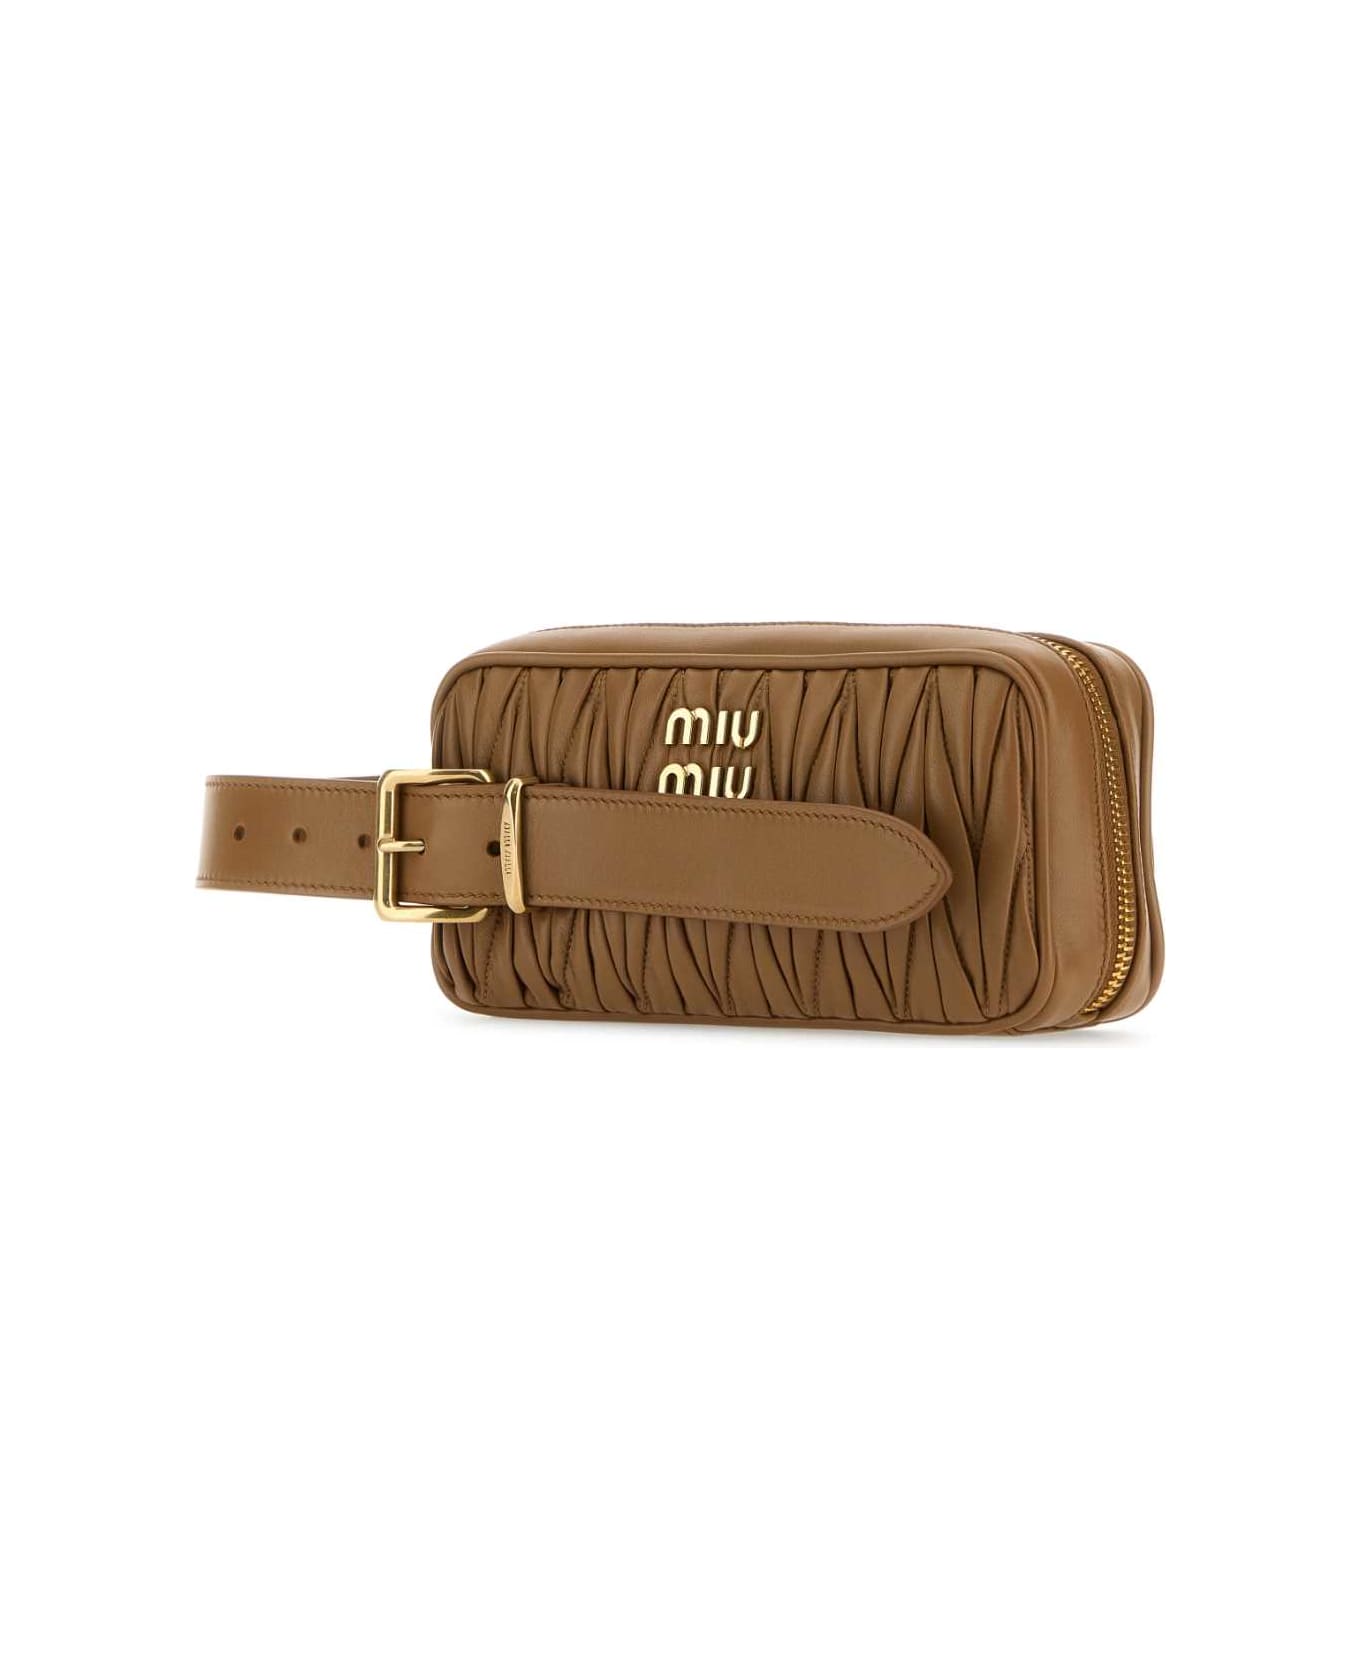 Miu Miu Biscuit Leather Clutch - CARAMEL